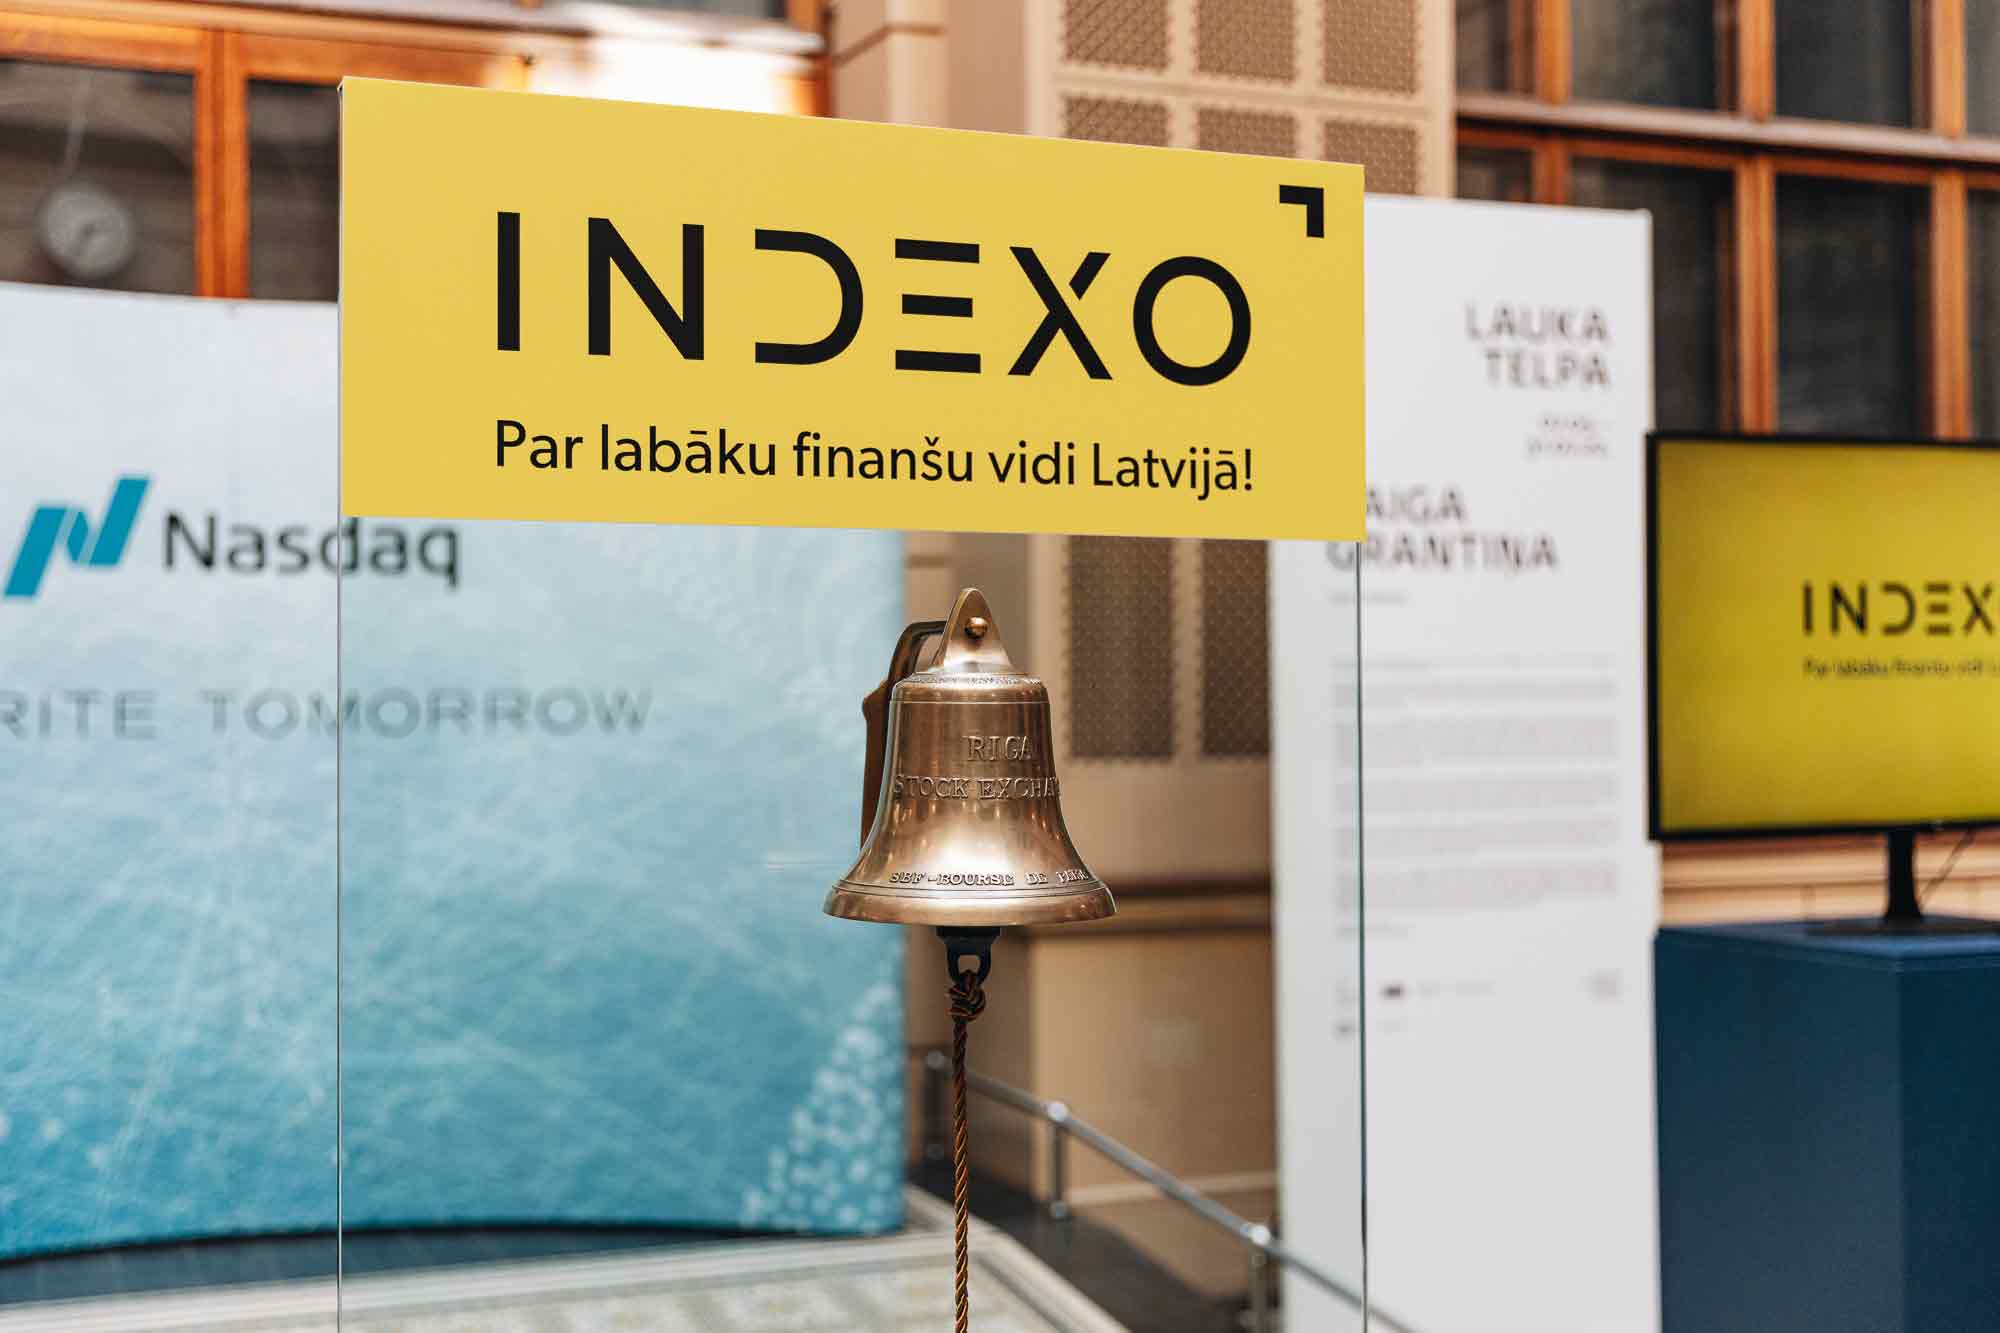 Indexo apsteidz Luminor pēc pensiju 2. līmeņa pārvaldīto aktīvu vērtības